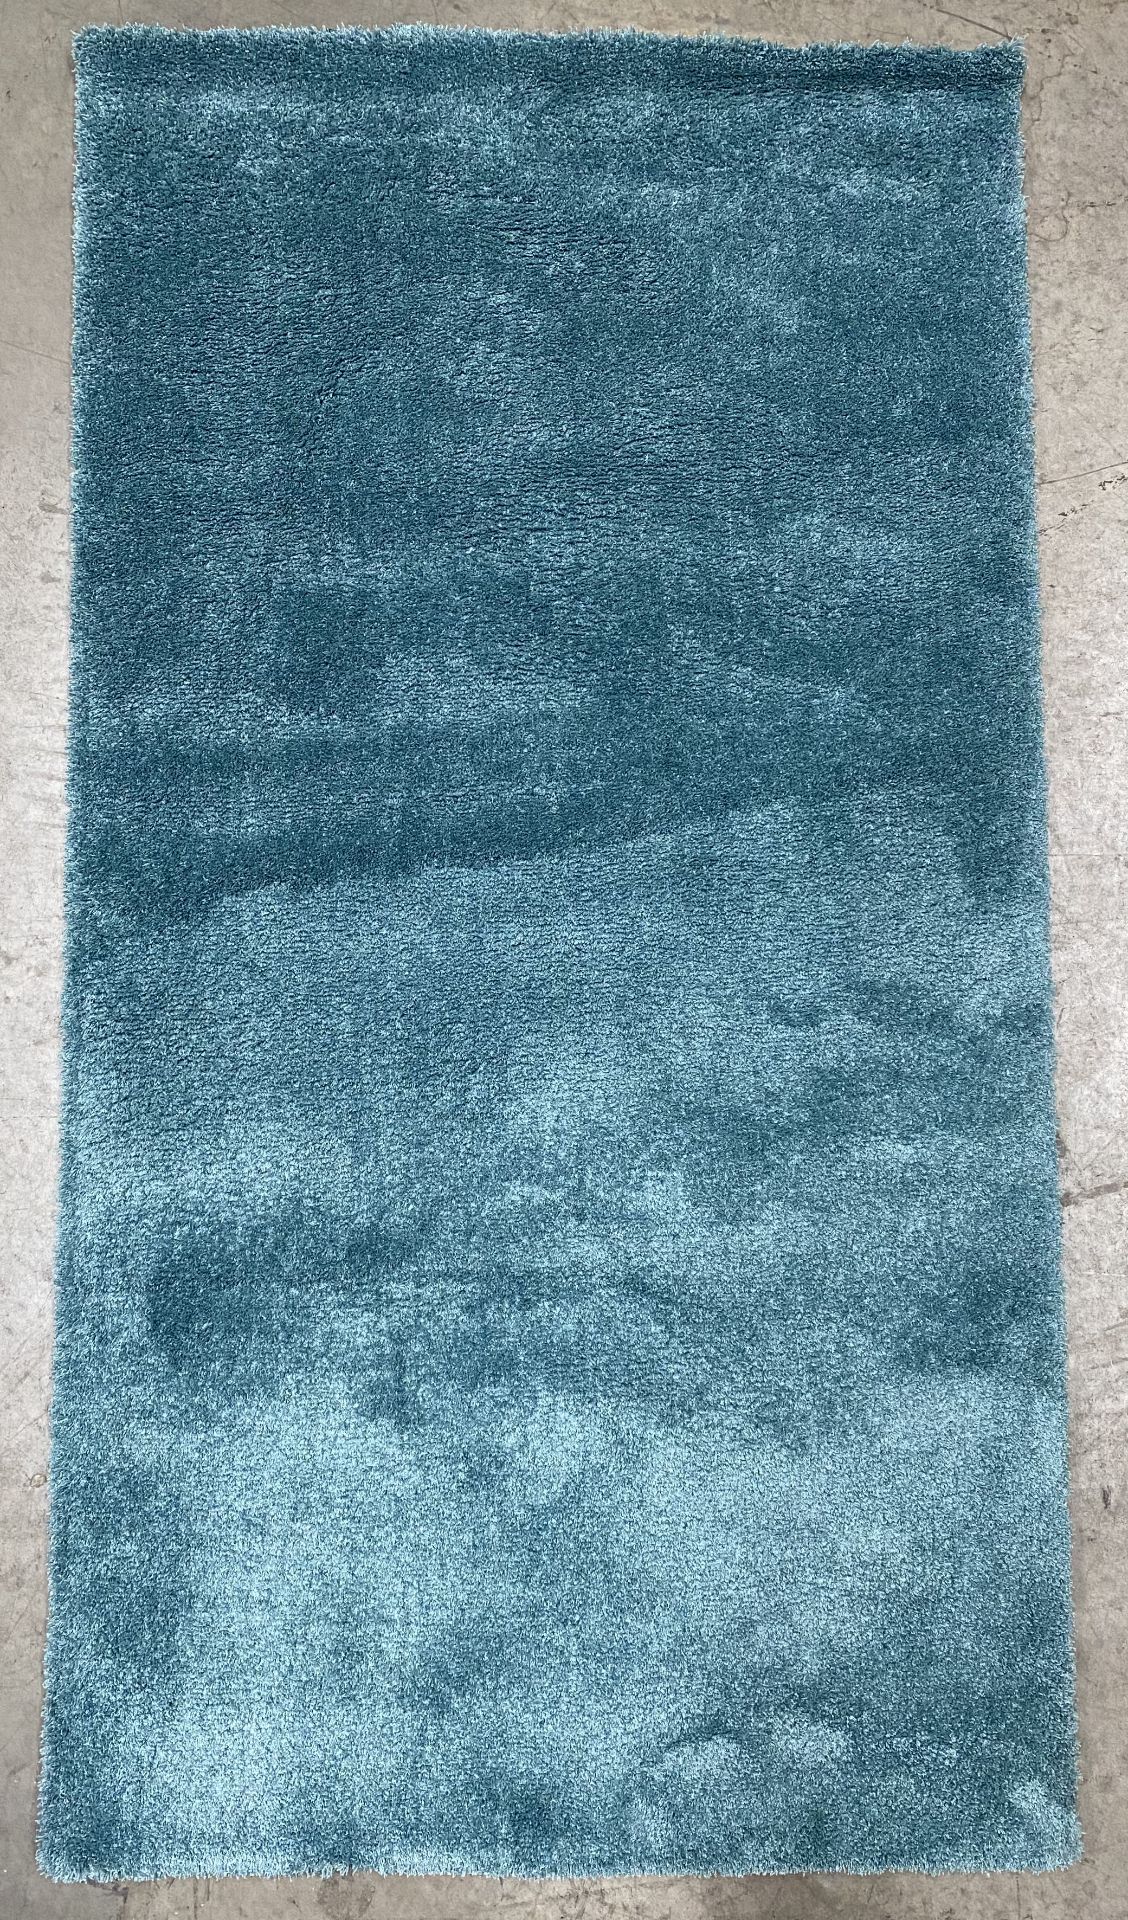 A turquoise felt backed rug - 150cm x 80cm